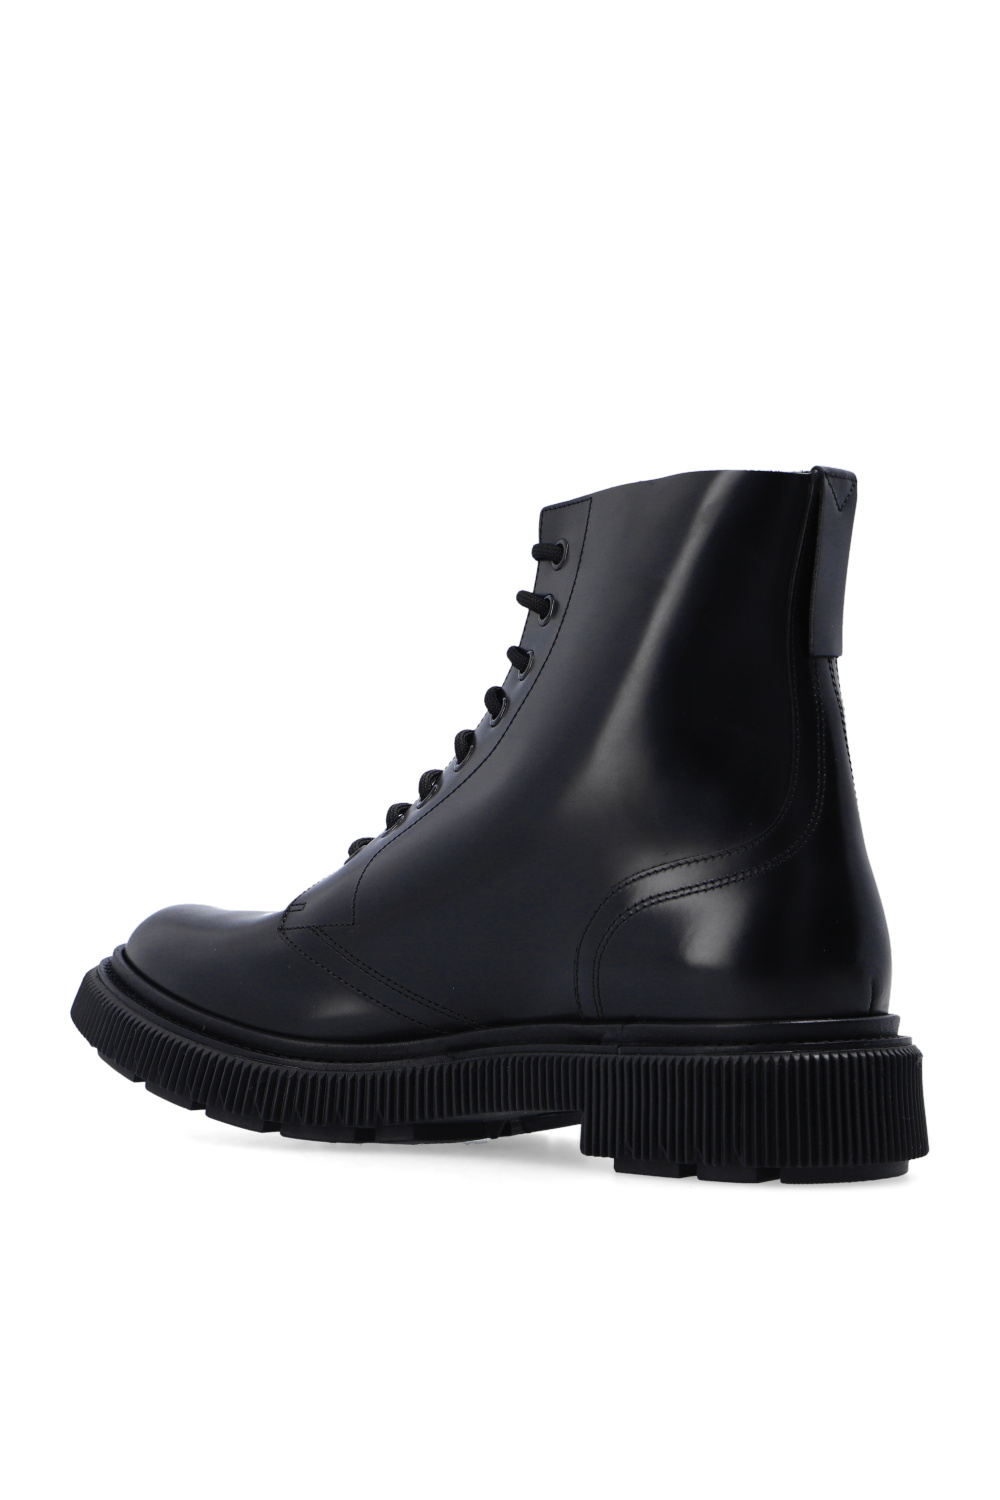 Adieu Paris Leather Boots boots